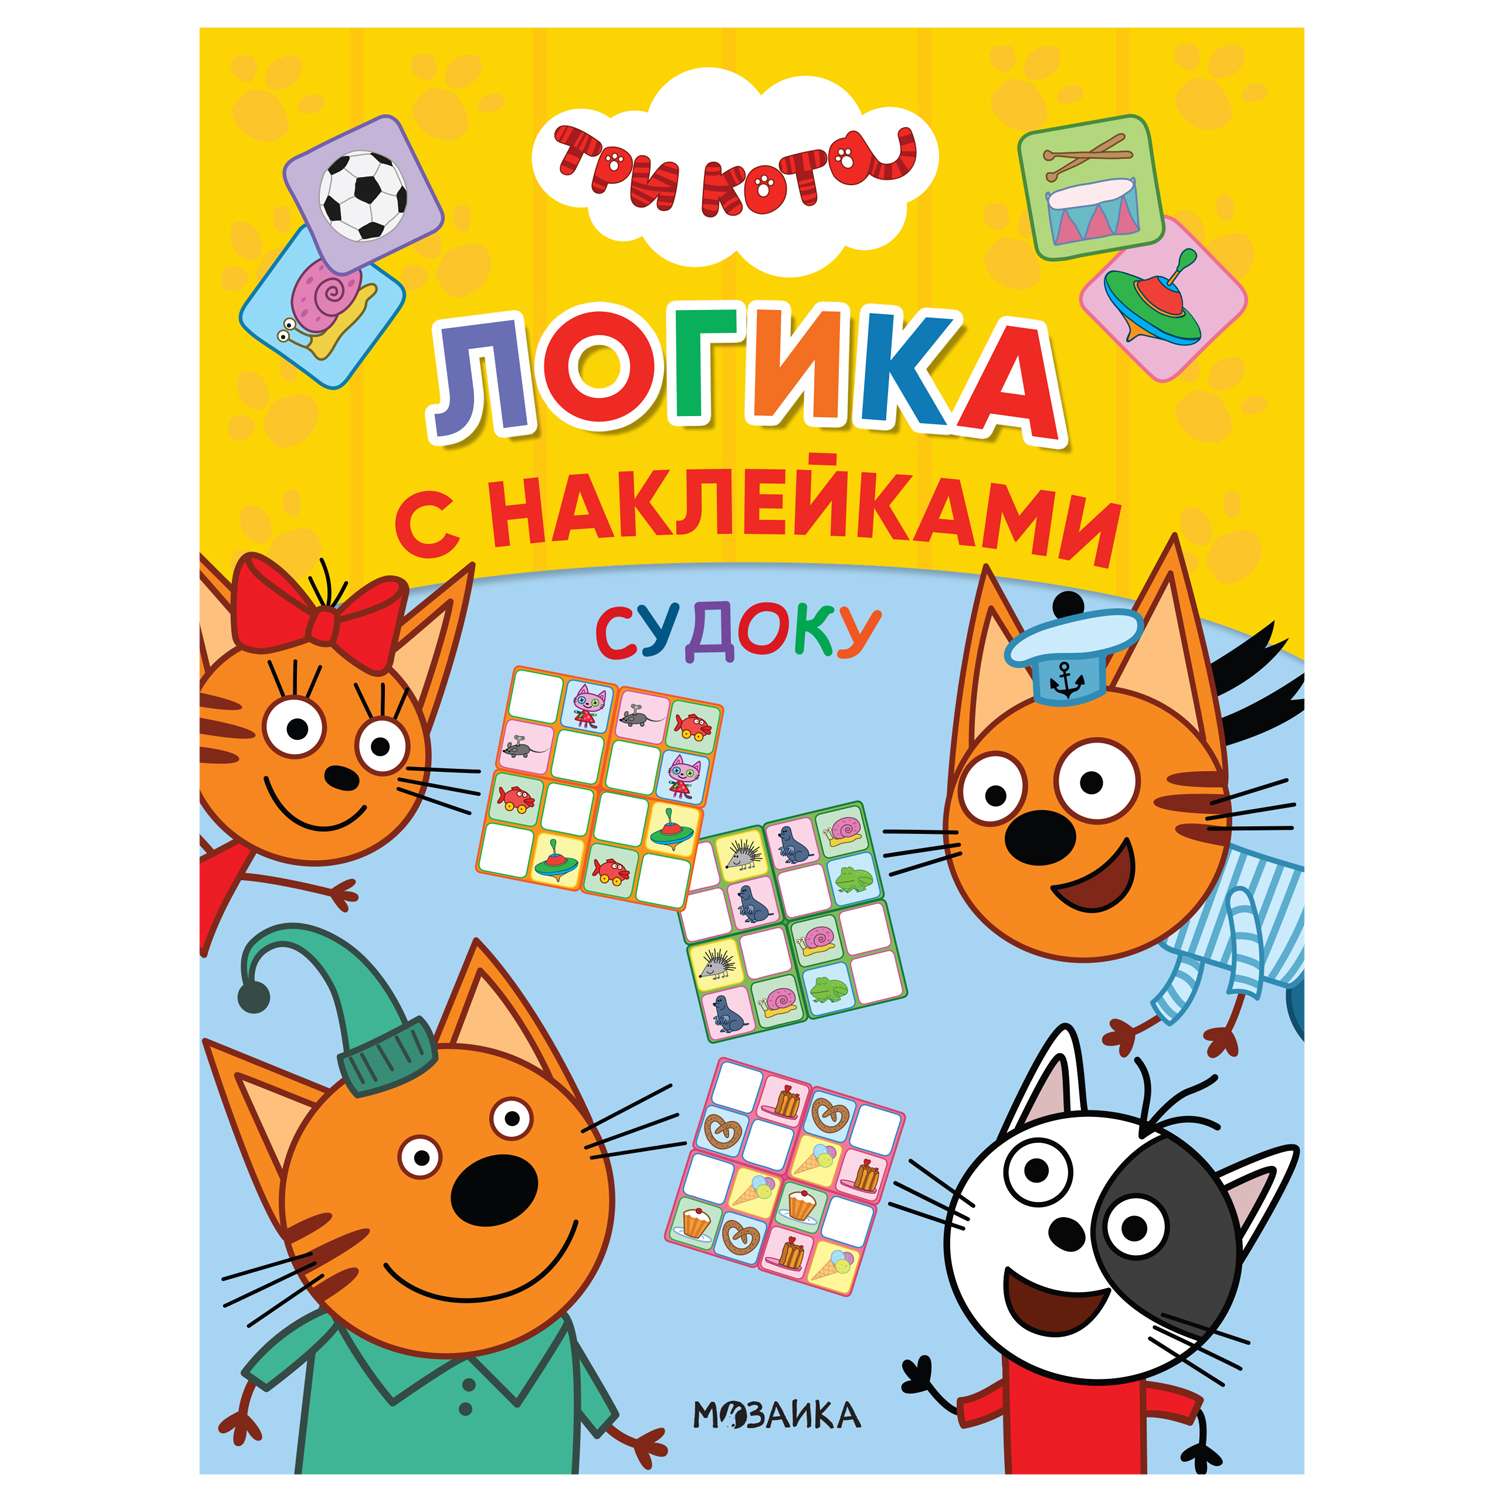 Книга МОЗАИКА kids Три кота Логика с наклейками Судоку - фото 1